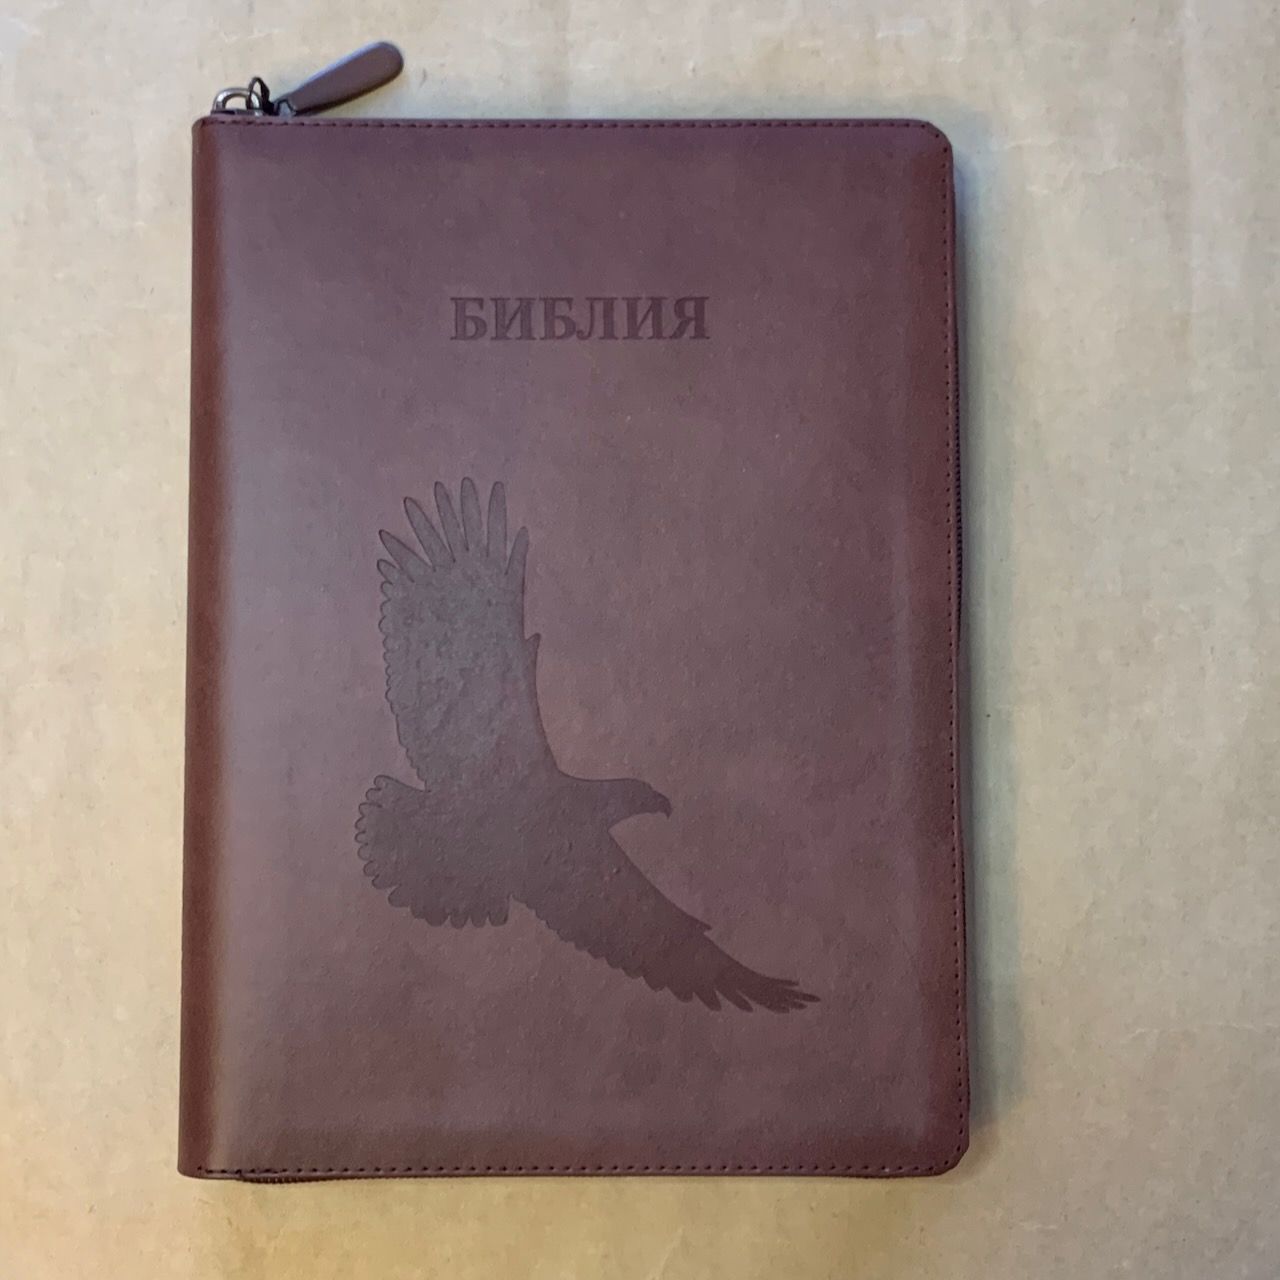 Библия 076zti код C14, дизайн "Орел" термо печать, кожаный переплет на молнии с индексами, цвет коричневый, размер 180x243 мм